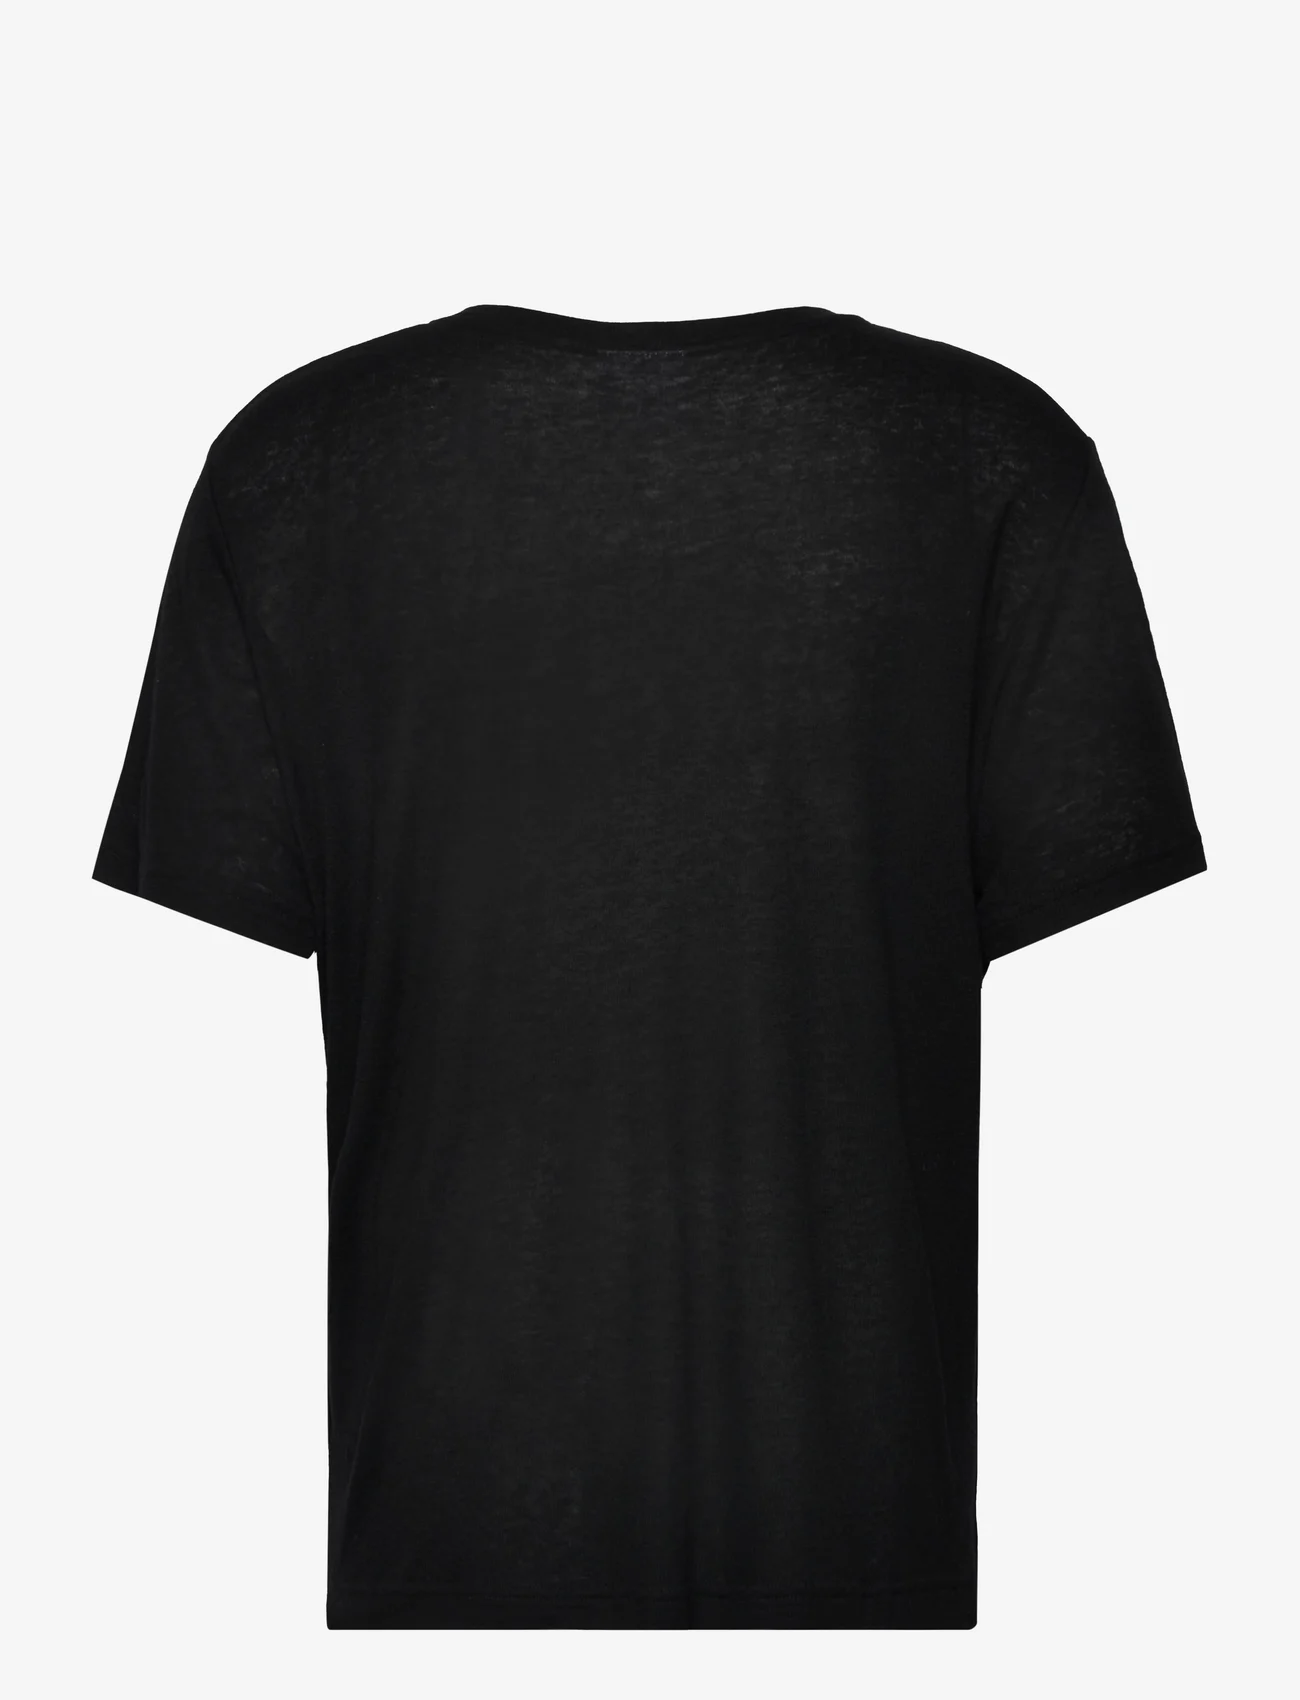 Day Birger et Mikkelsen - Parry - Soft Wool - t-shirts - black - 1